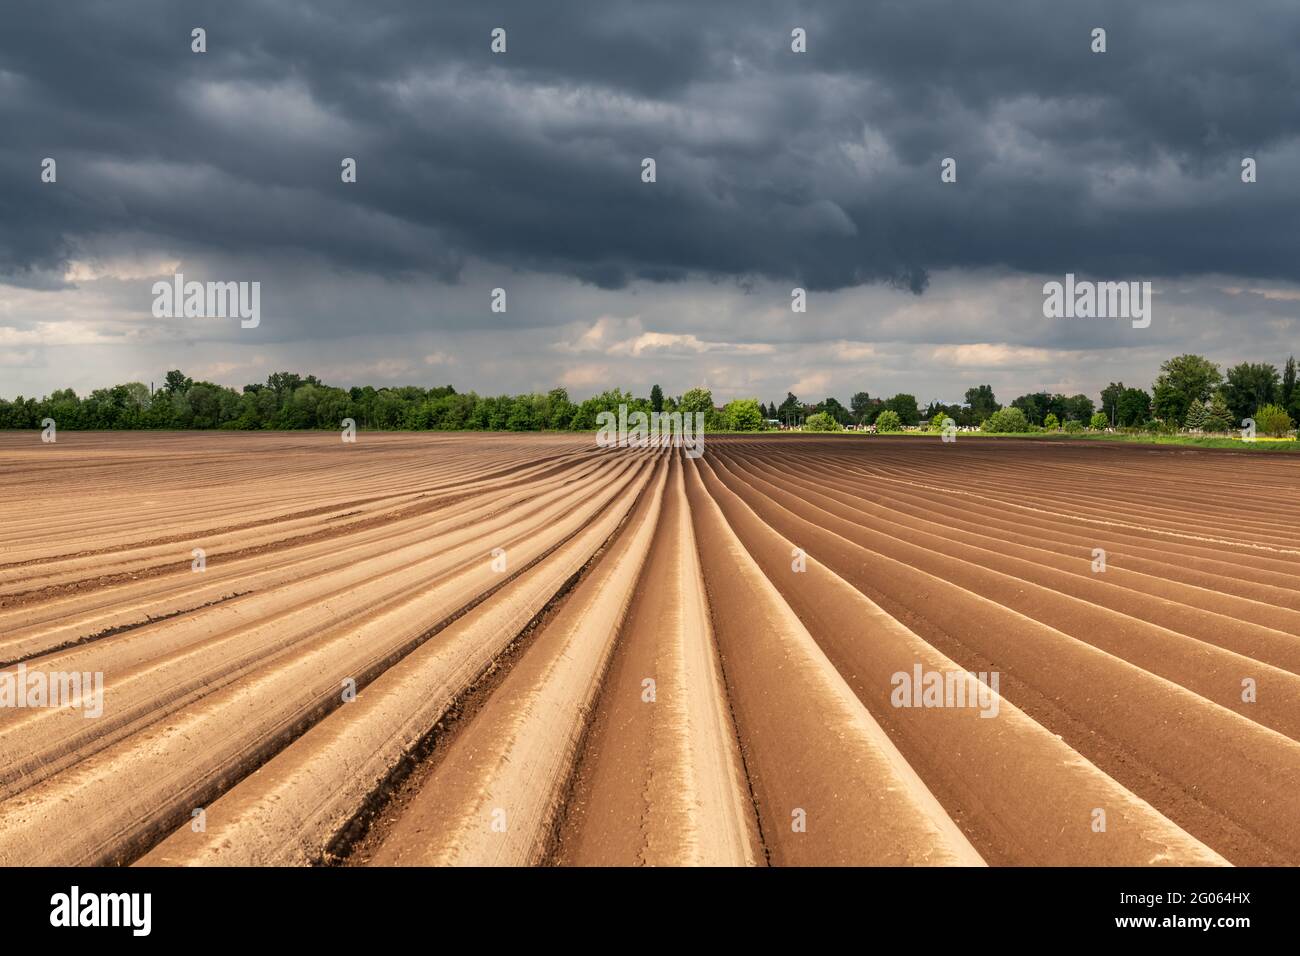 Campo agricolo con file uniformi in primavera. Patate crescenti. Nuvole scure piovose sullo sfondo Foto Stock